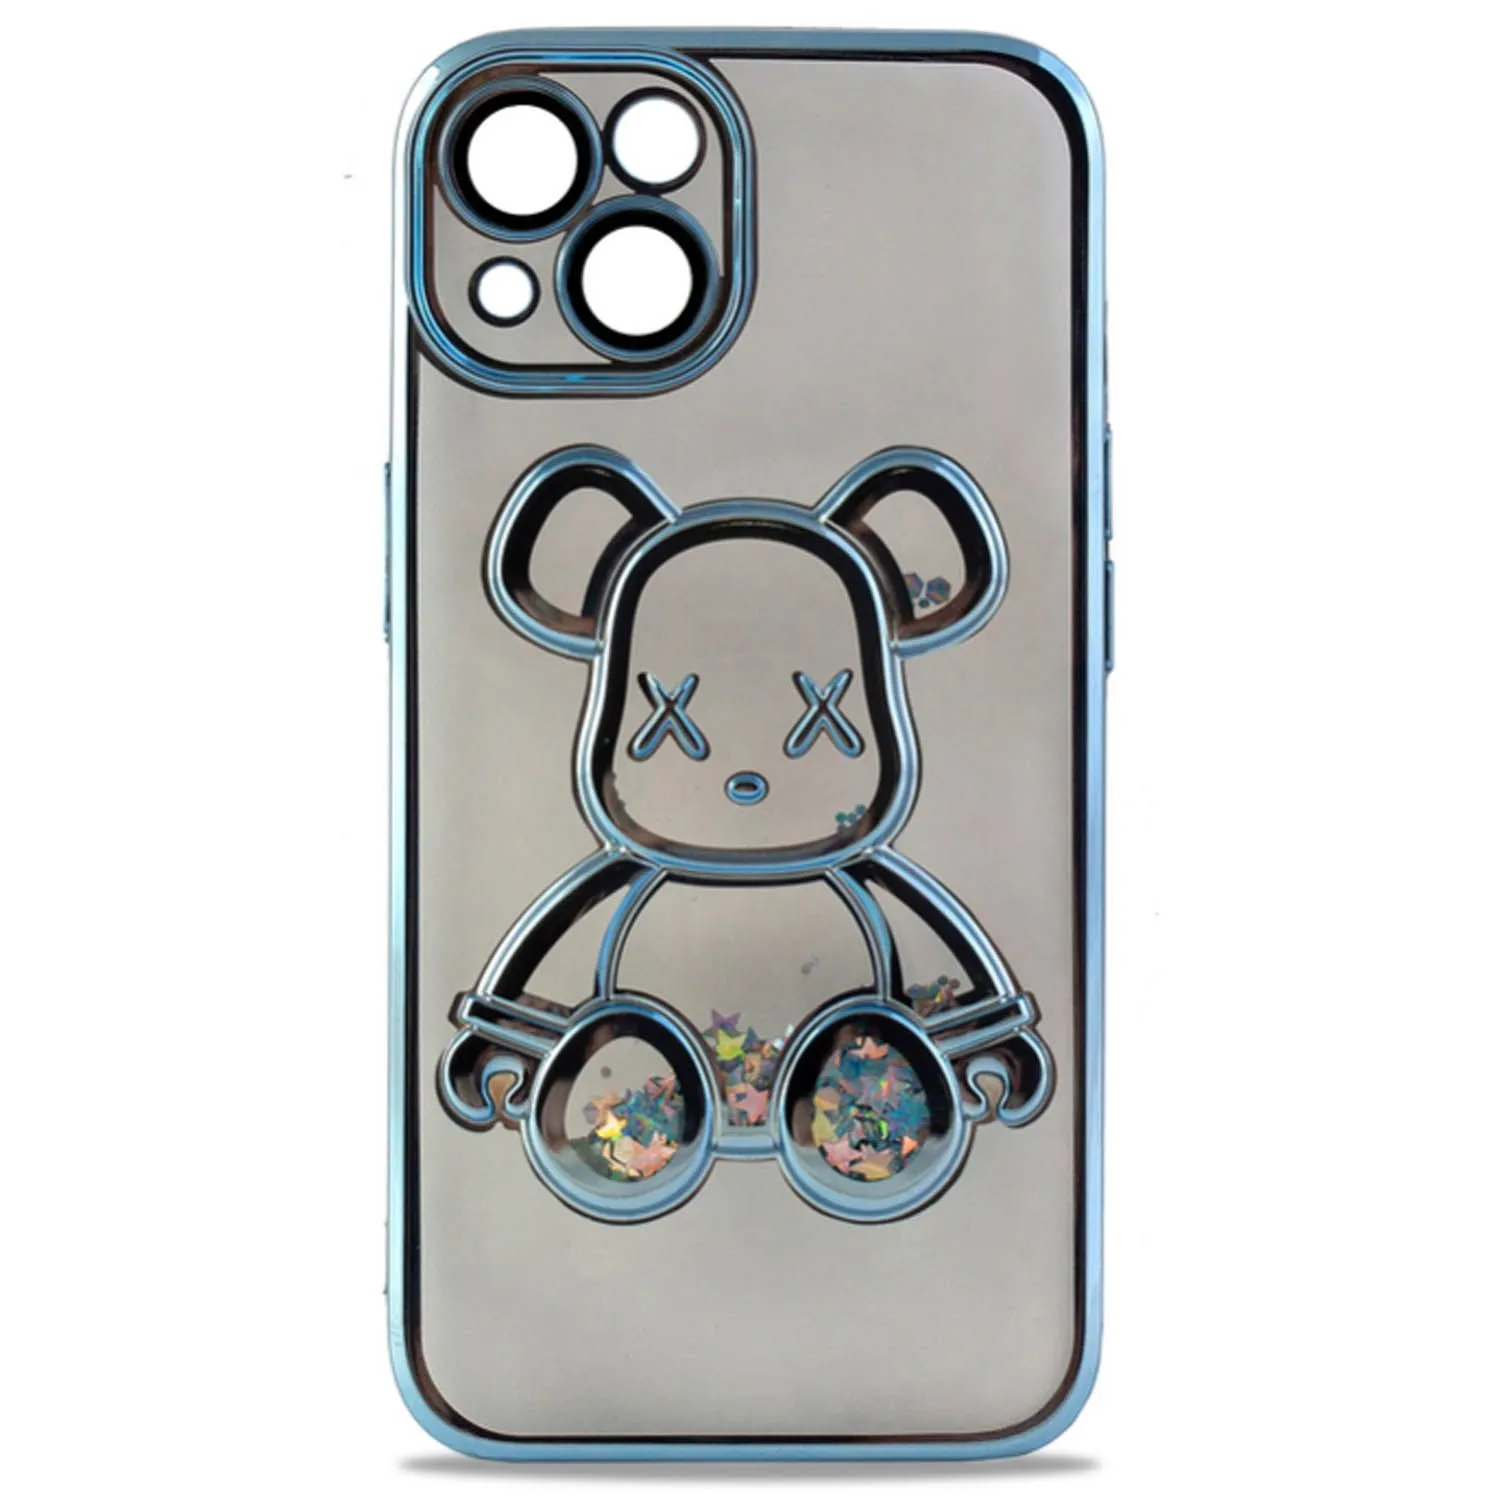 Чехол силиконовый с защитой камеры с принтом Bearbrick для Apple iPhone 13, iPhone 14 (голубой)